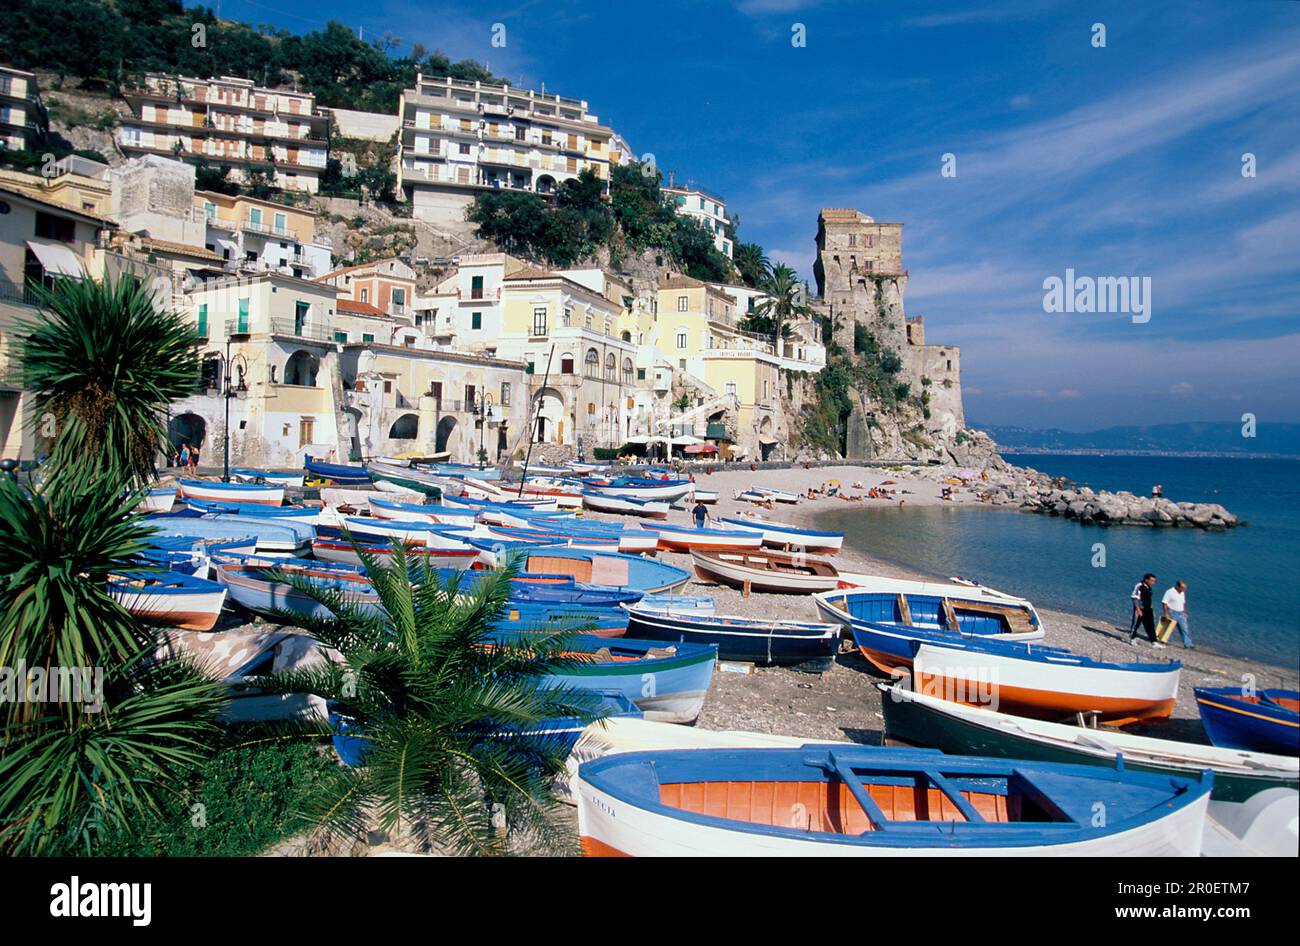 Boote am Strand, cetera, Amalfikueste, Kampanien Italien, Europa Foto Stock